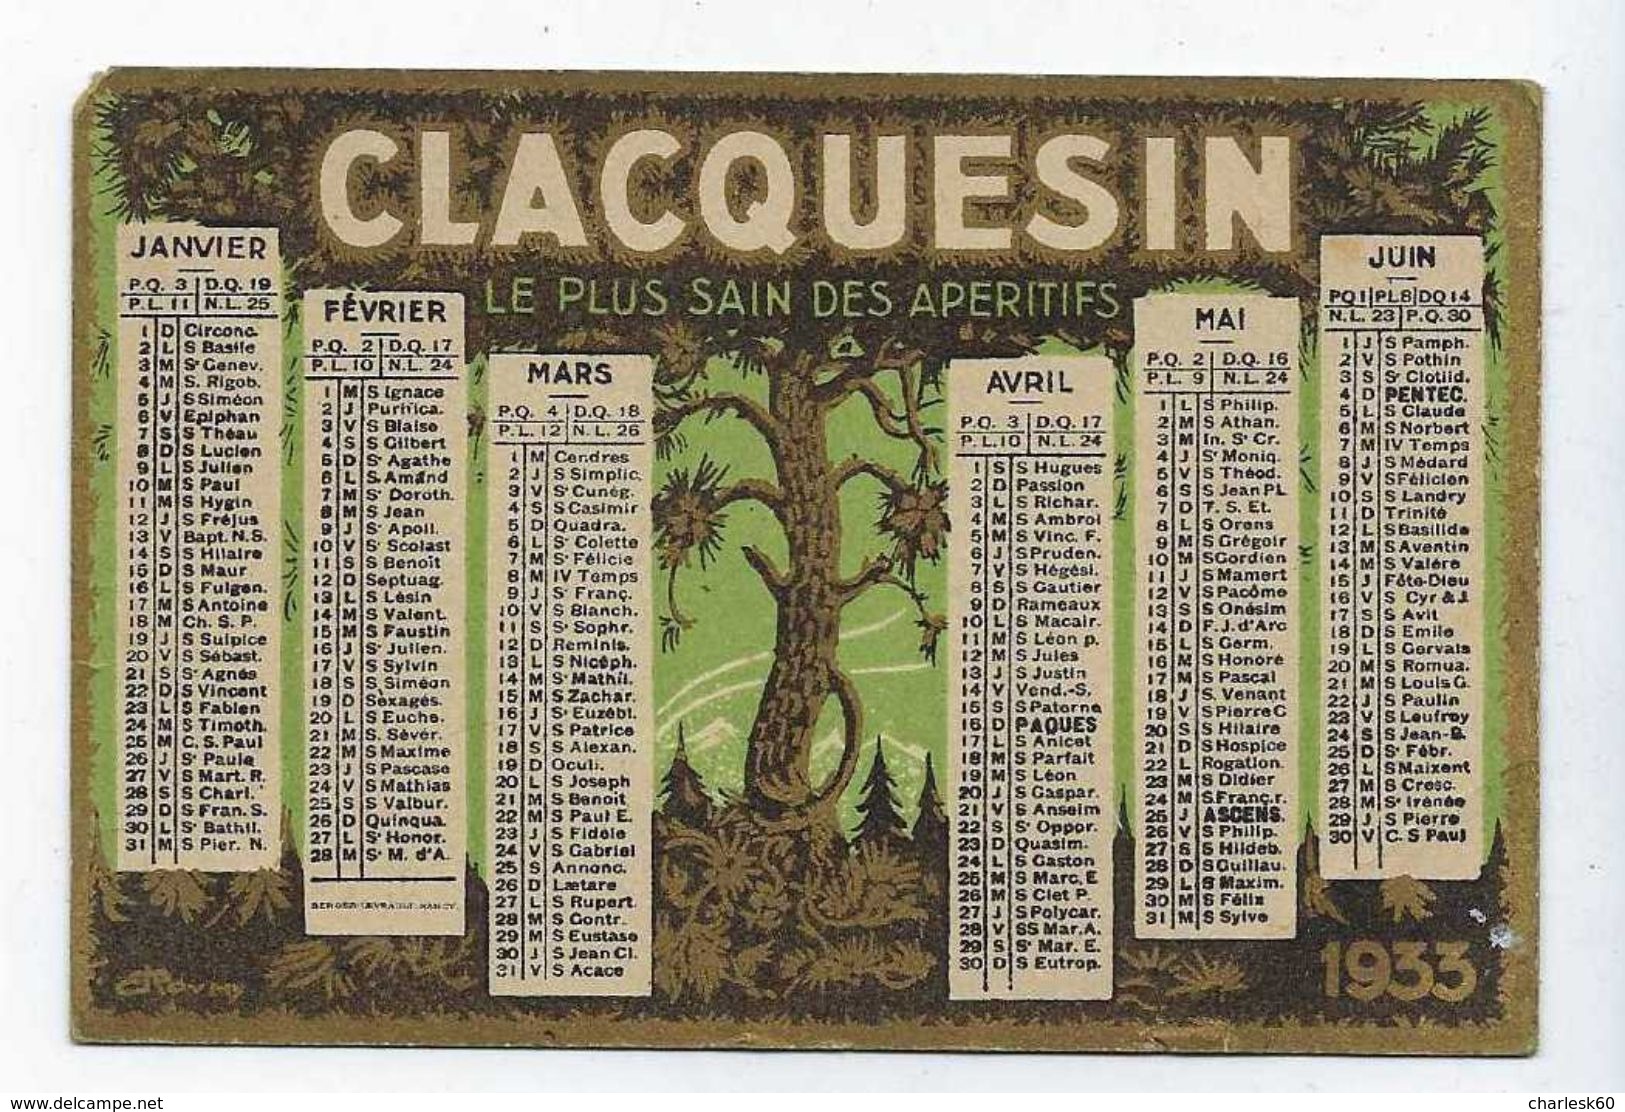 Calendrier Petit Format Année 1933 Publicité Apéritif Clacquesin - Small : 1901-20